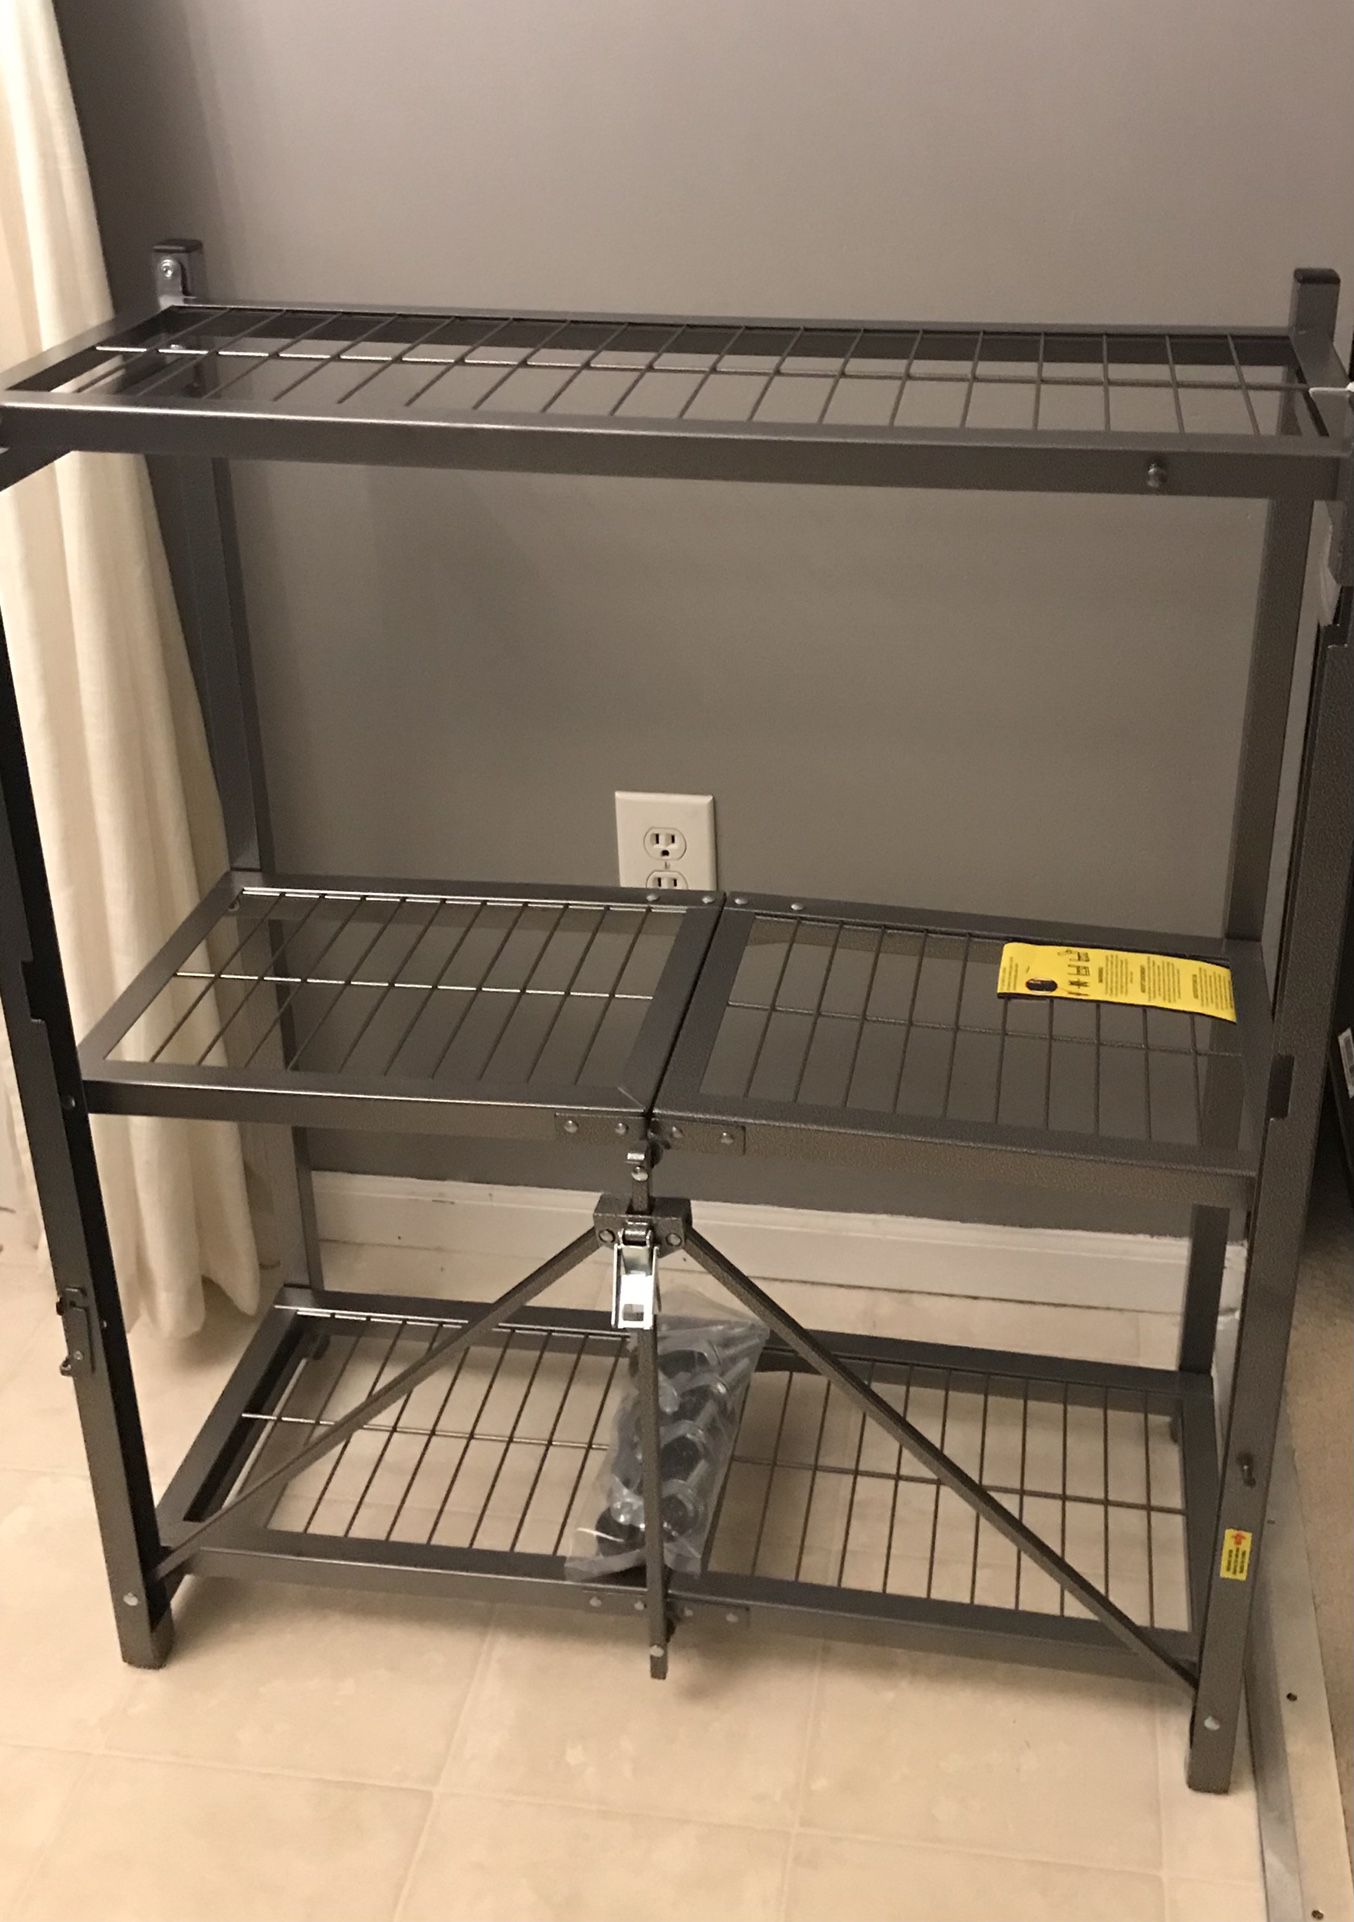 20 Second Storage Rack/Shelf